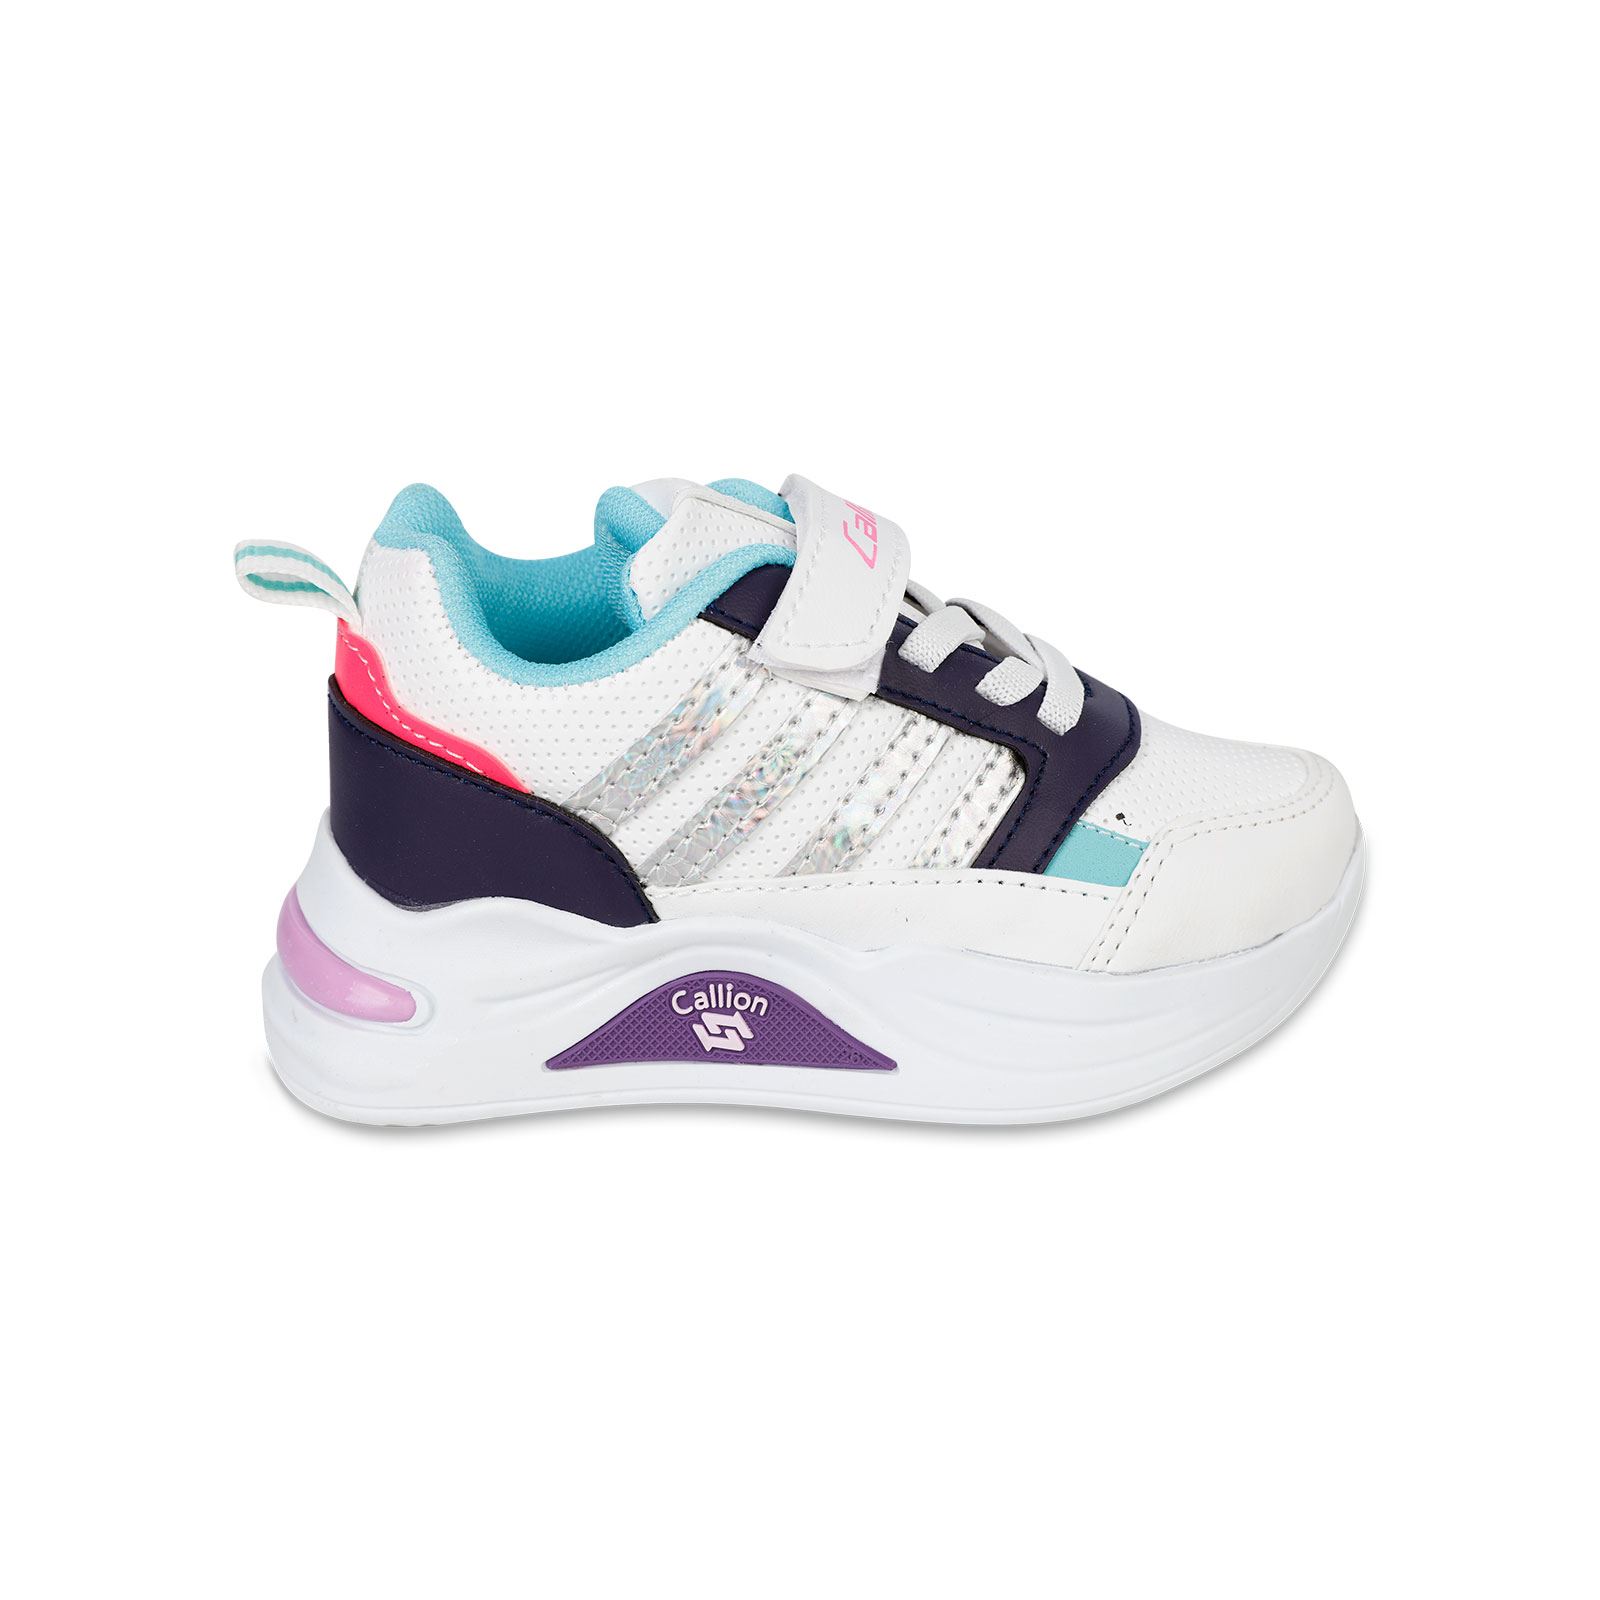 Callion Kız Çocuk Spor Ayakkabı 31-35 Numara Beyaz-Mor